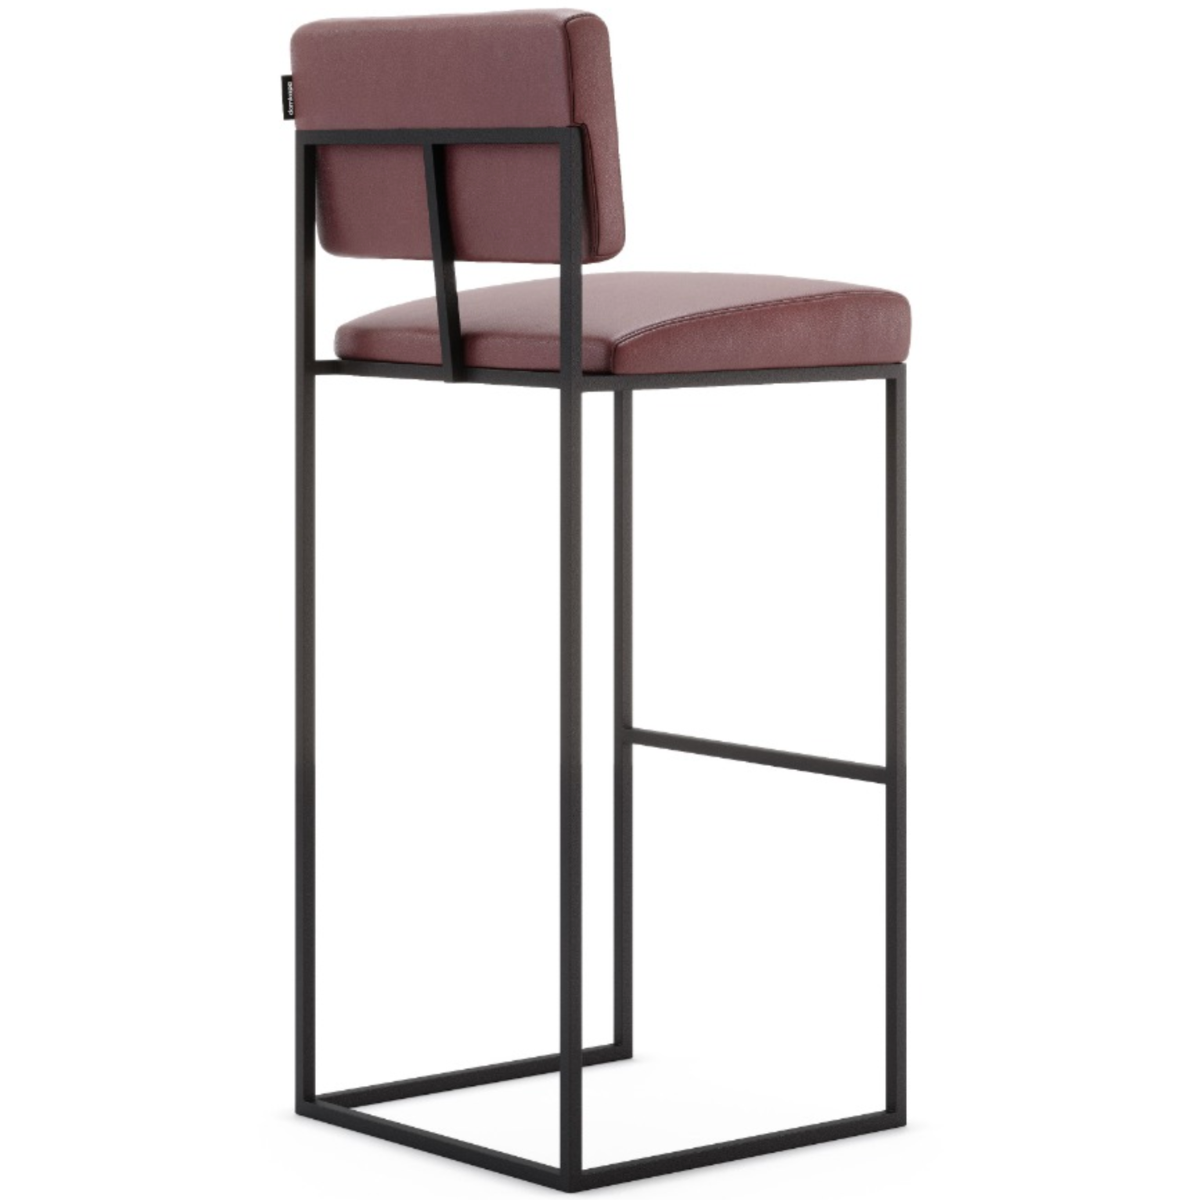 Domkapa Gram Bar Chair - Customisable | Modern Furniture + Decor